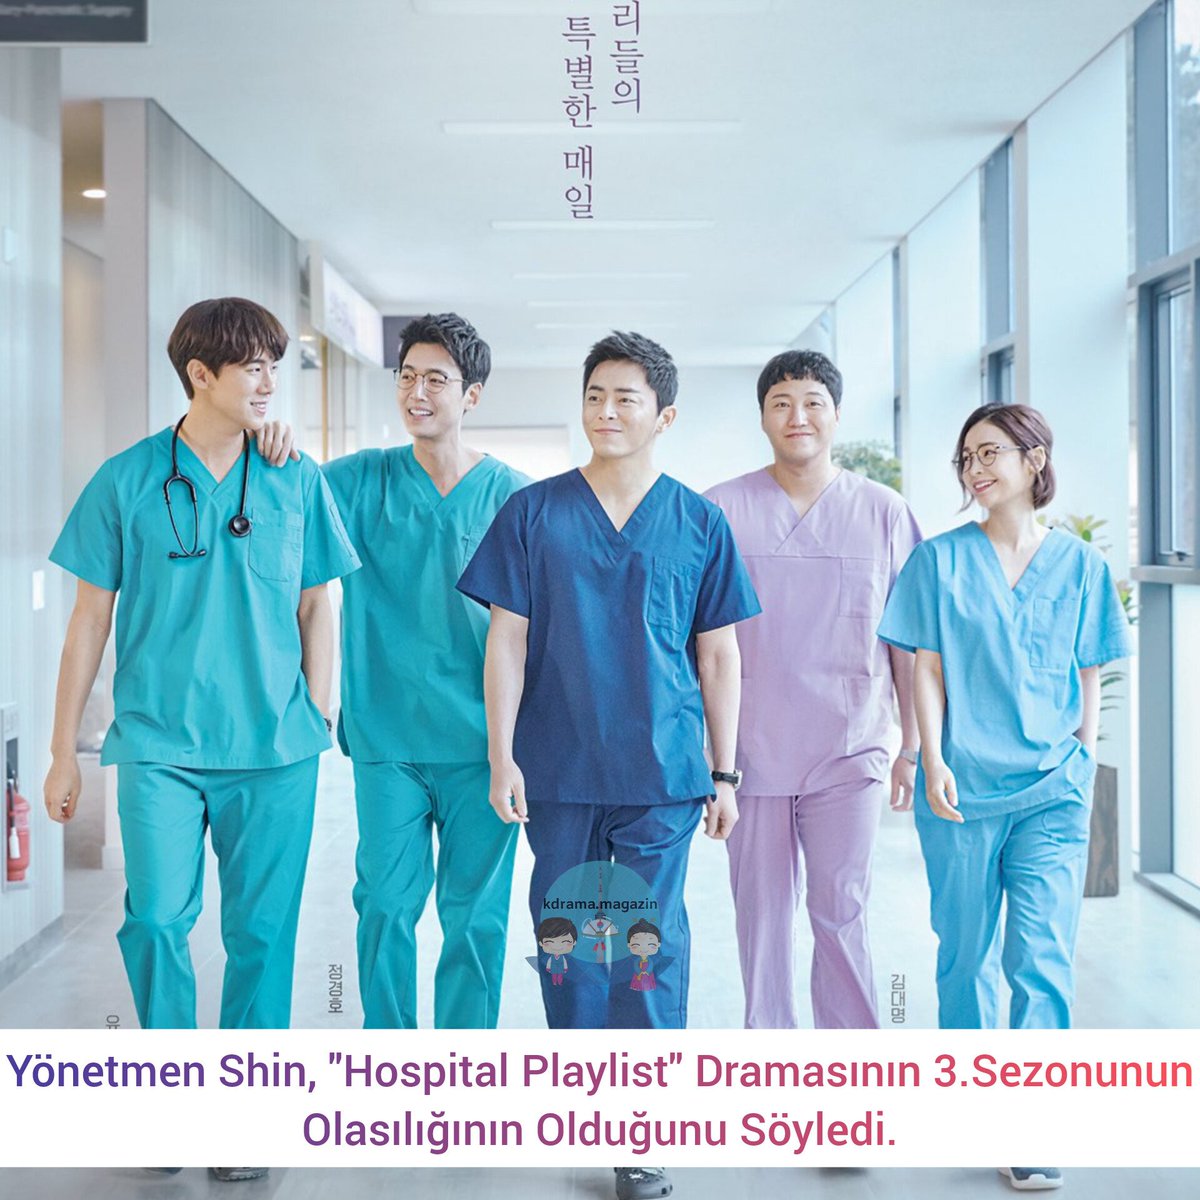 Yönetmen Shin, #HospitalPlaylist Dramasının 3.Sezonunun Olasılığının Olduğunu Söyledi.